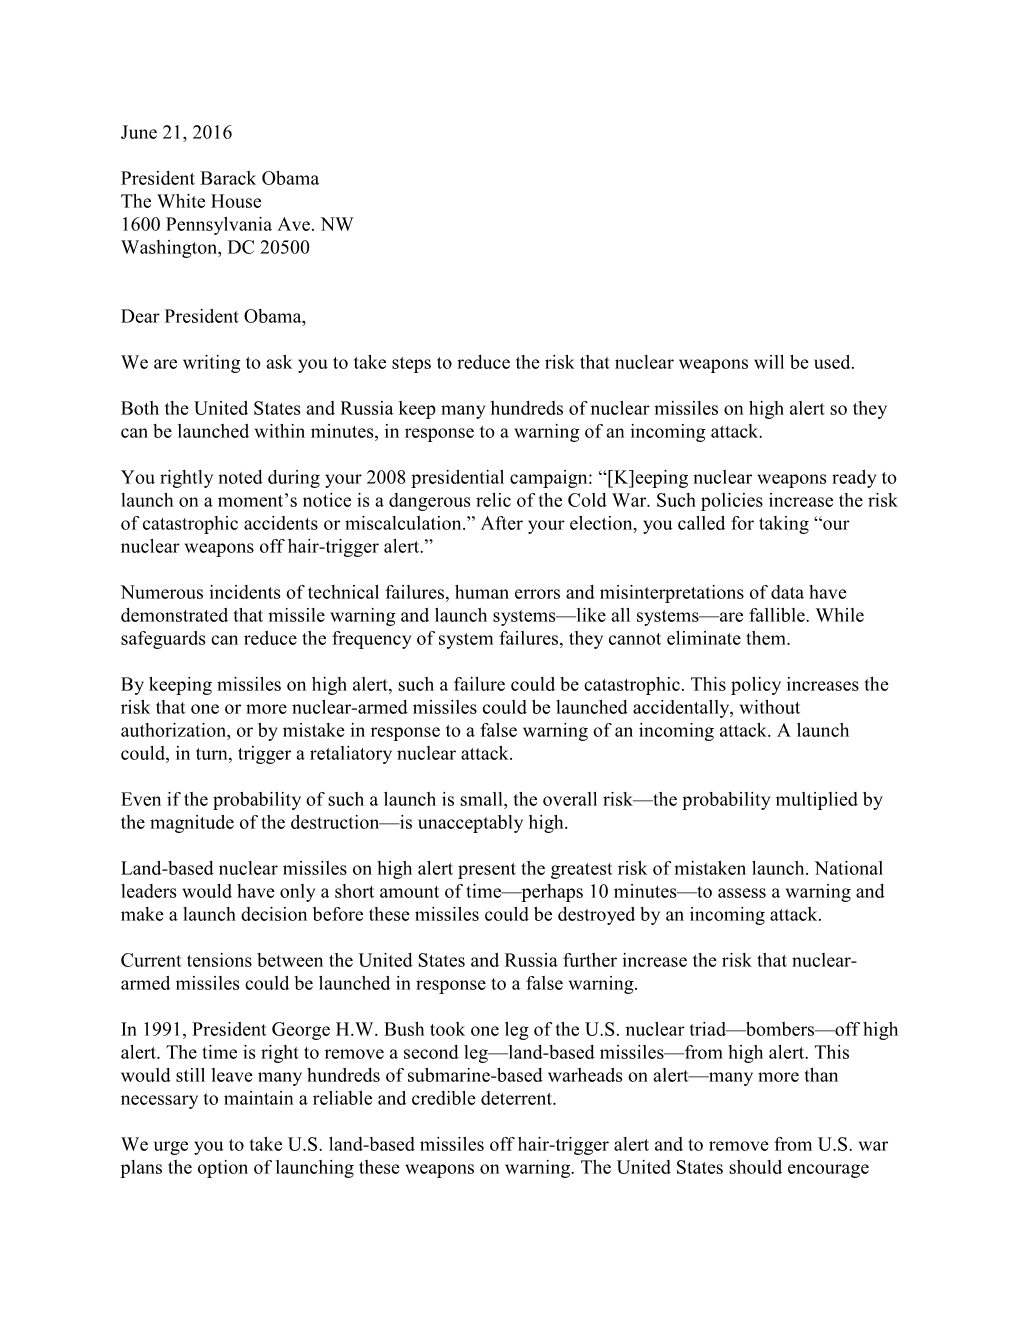 Letter to President Obama